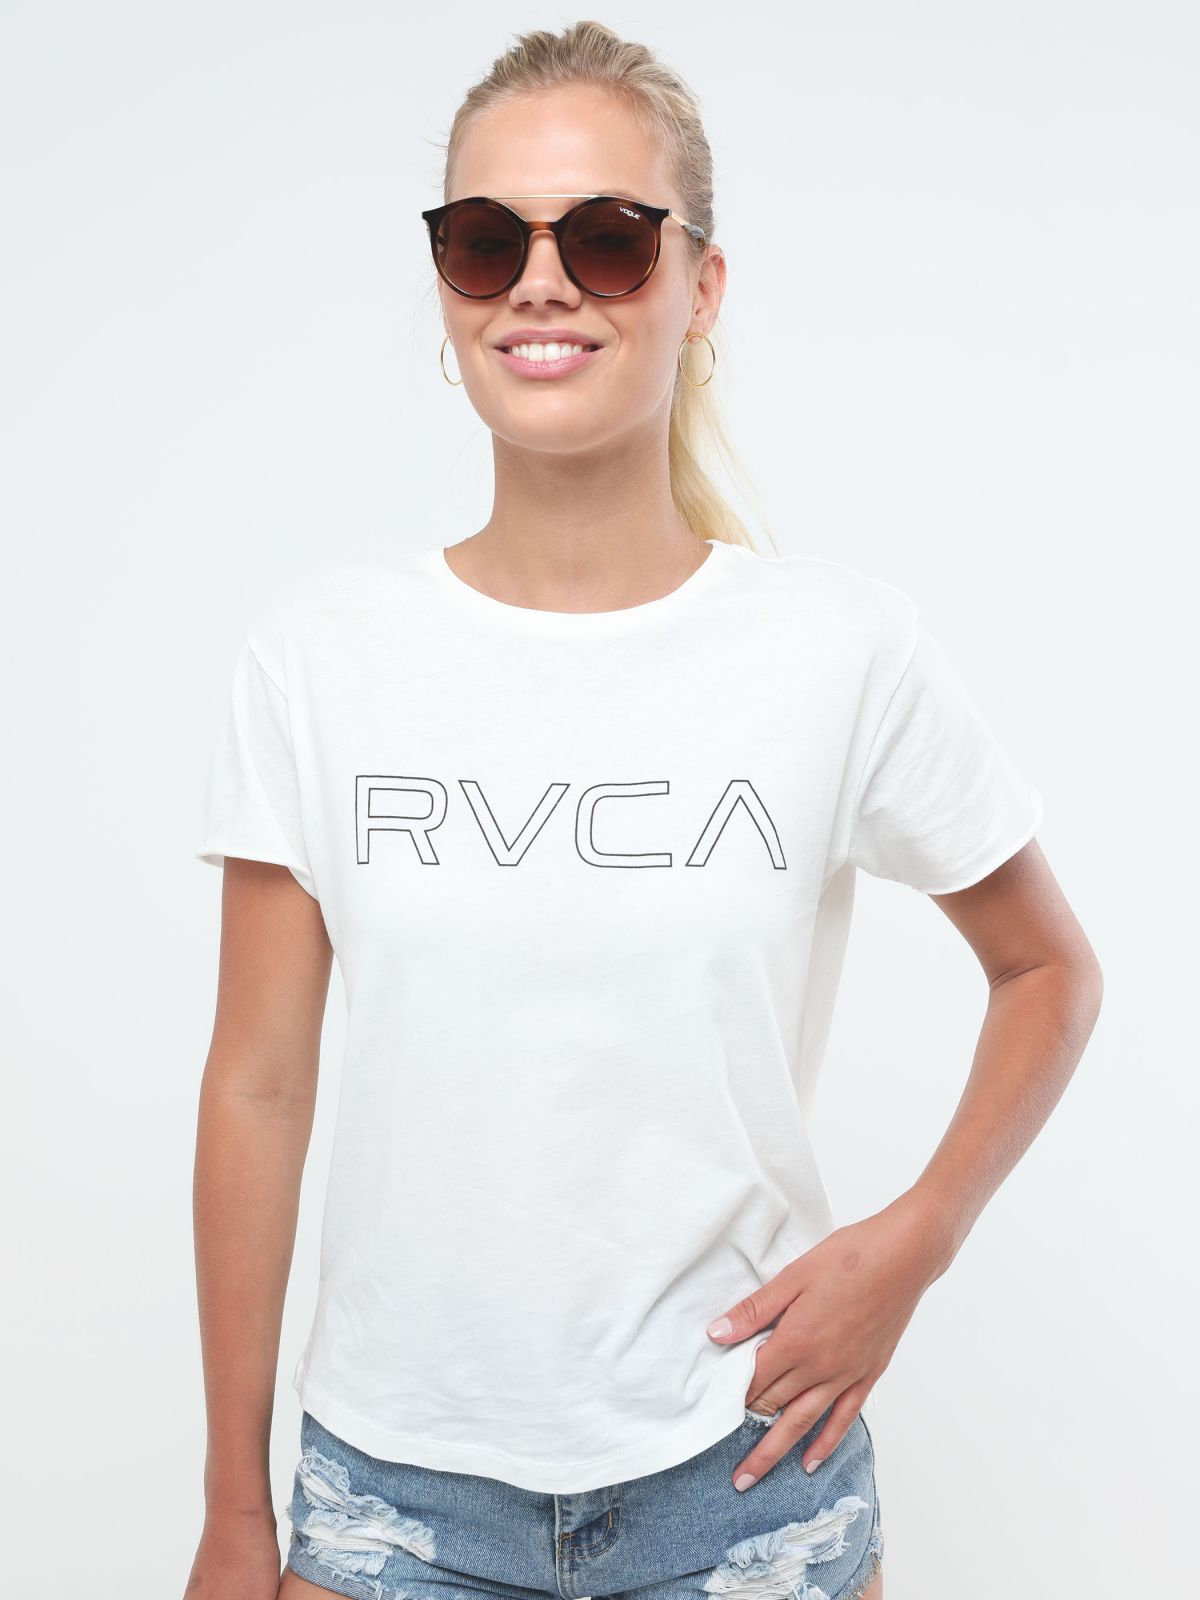  טי שירט לוגו של RVCA